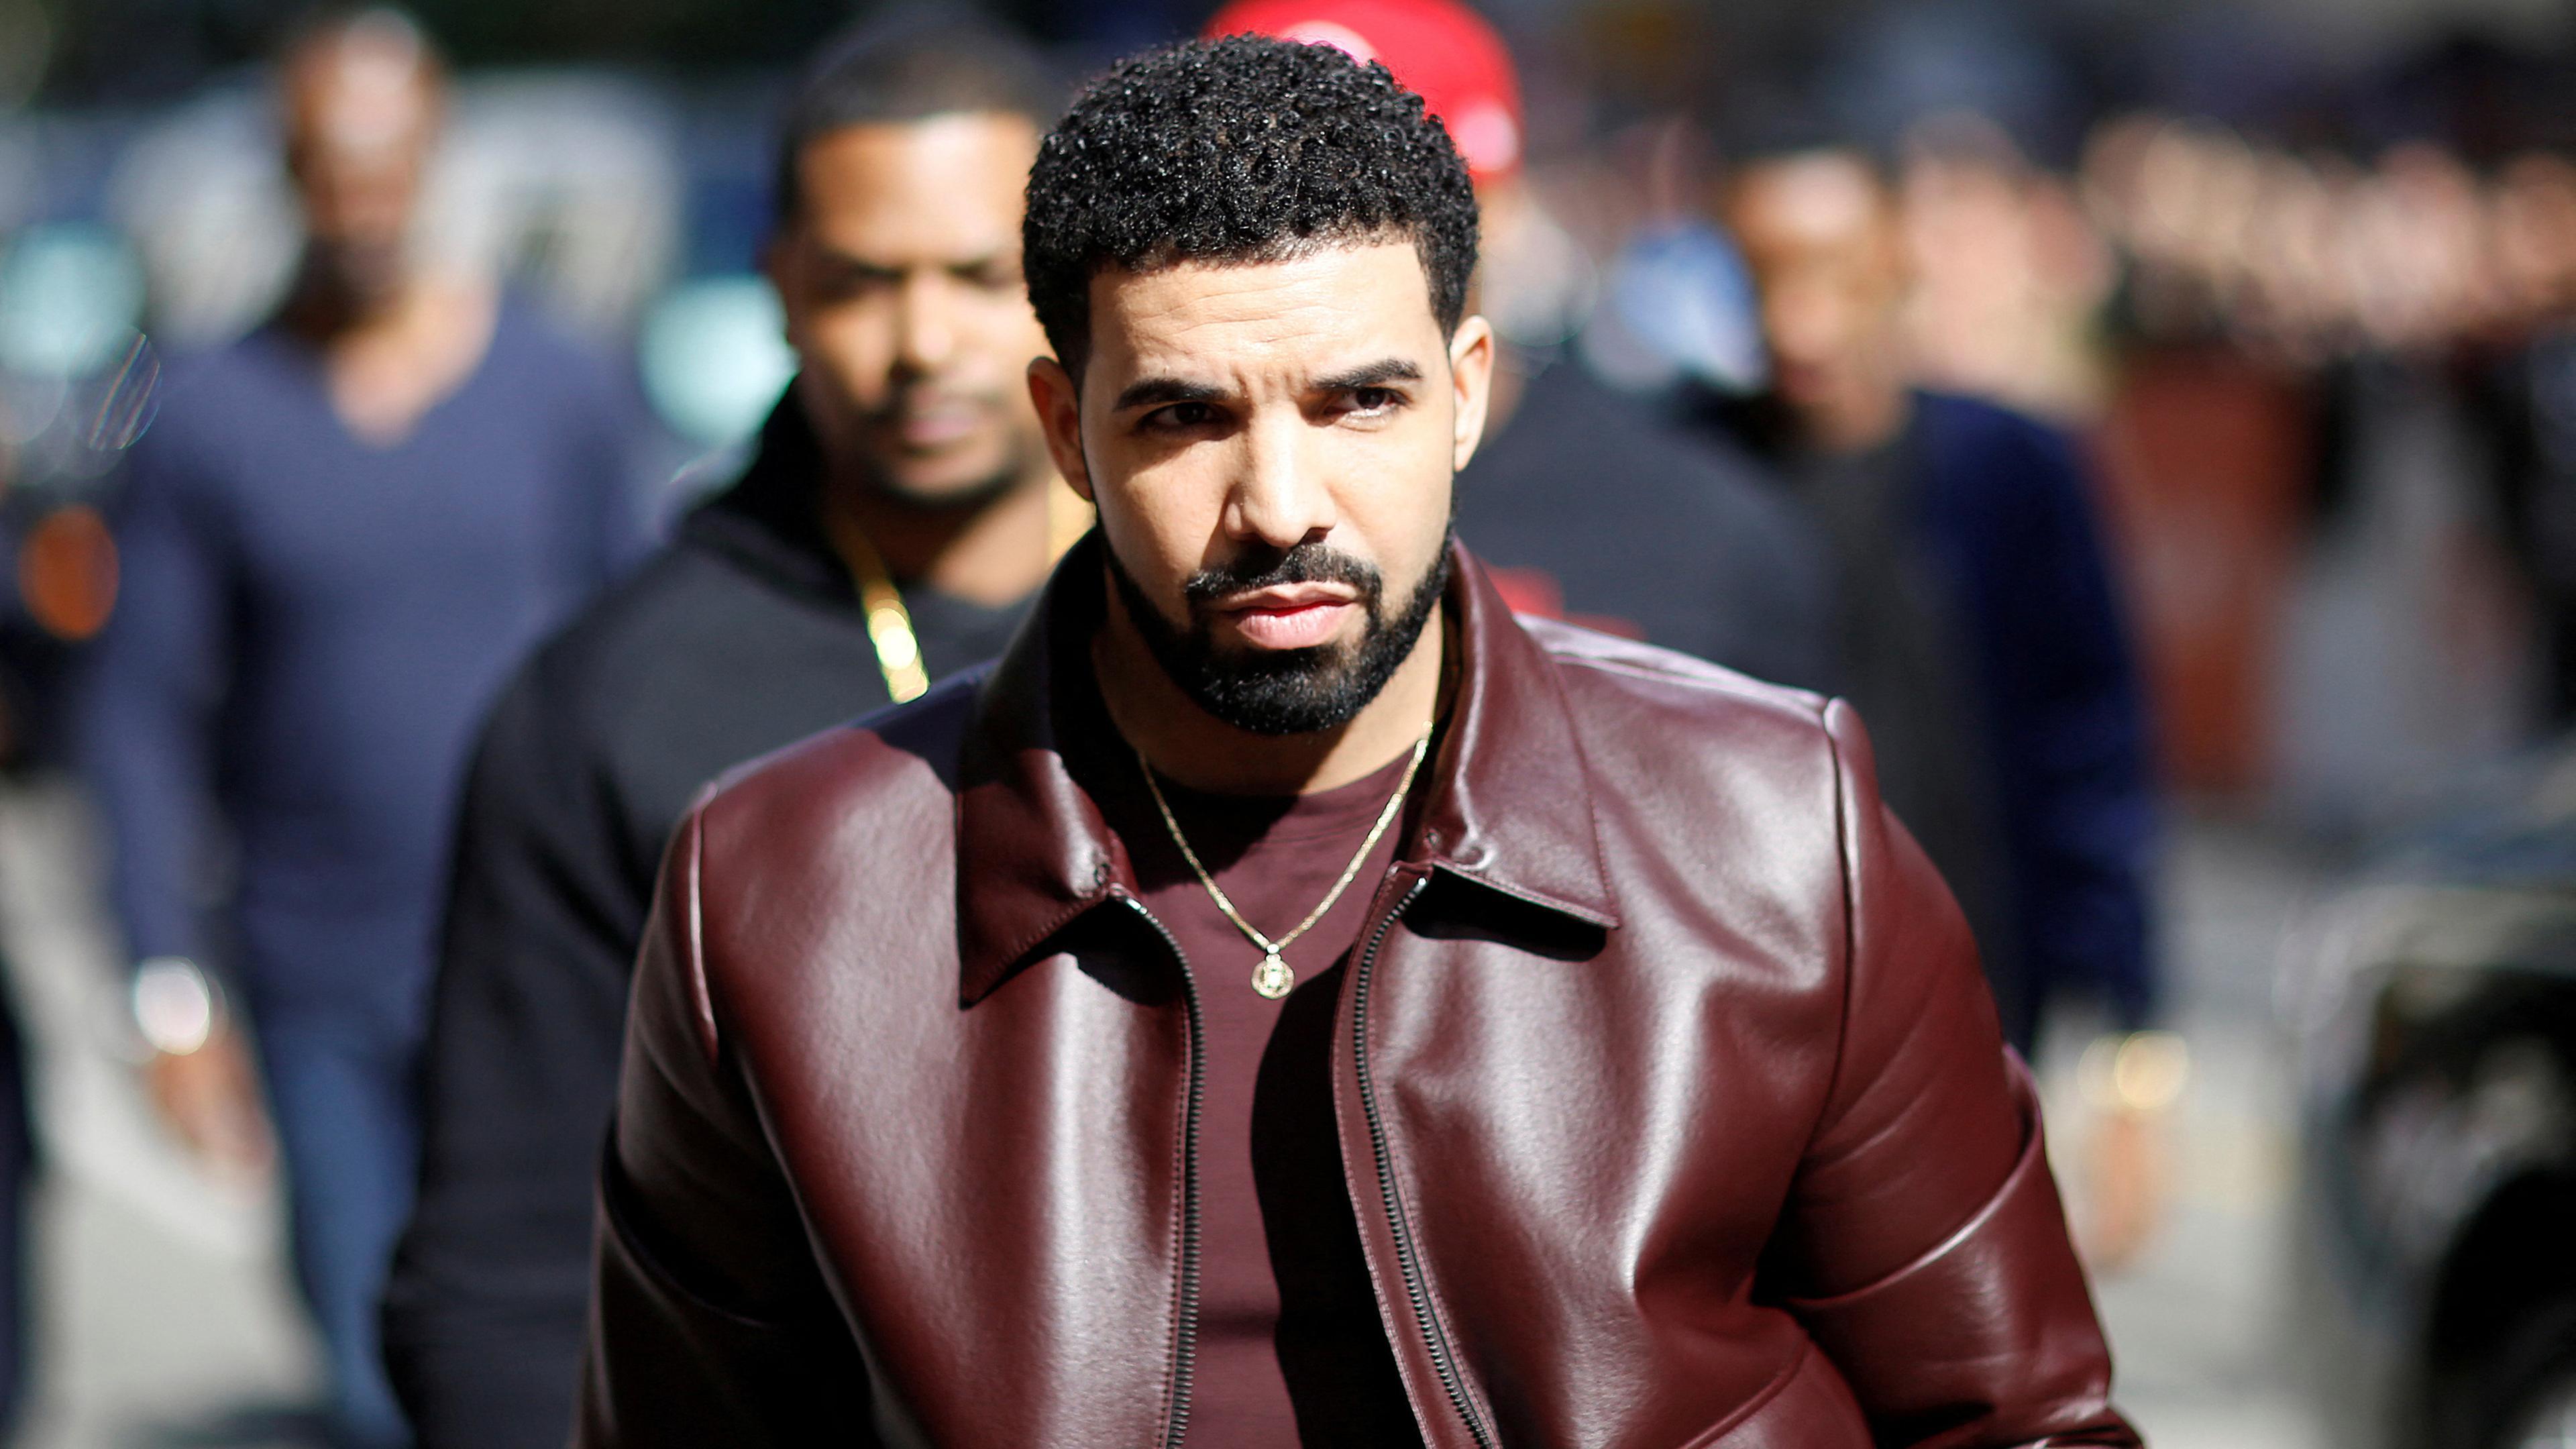 Rapper Drake